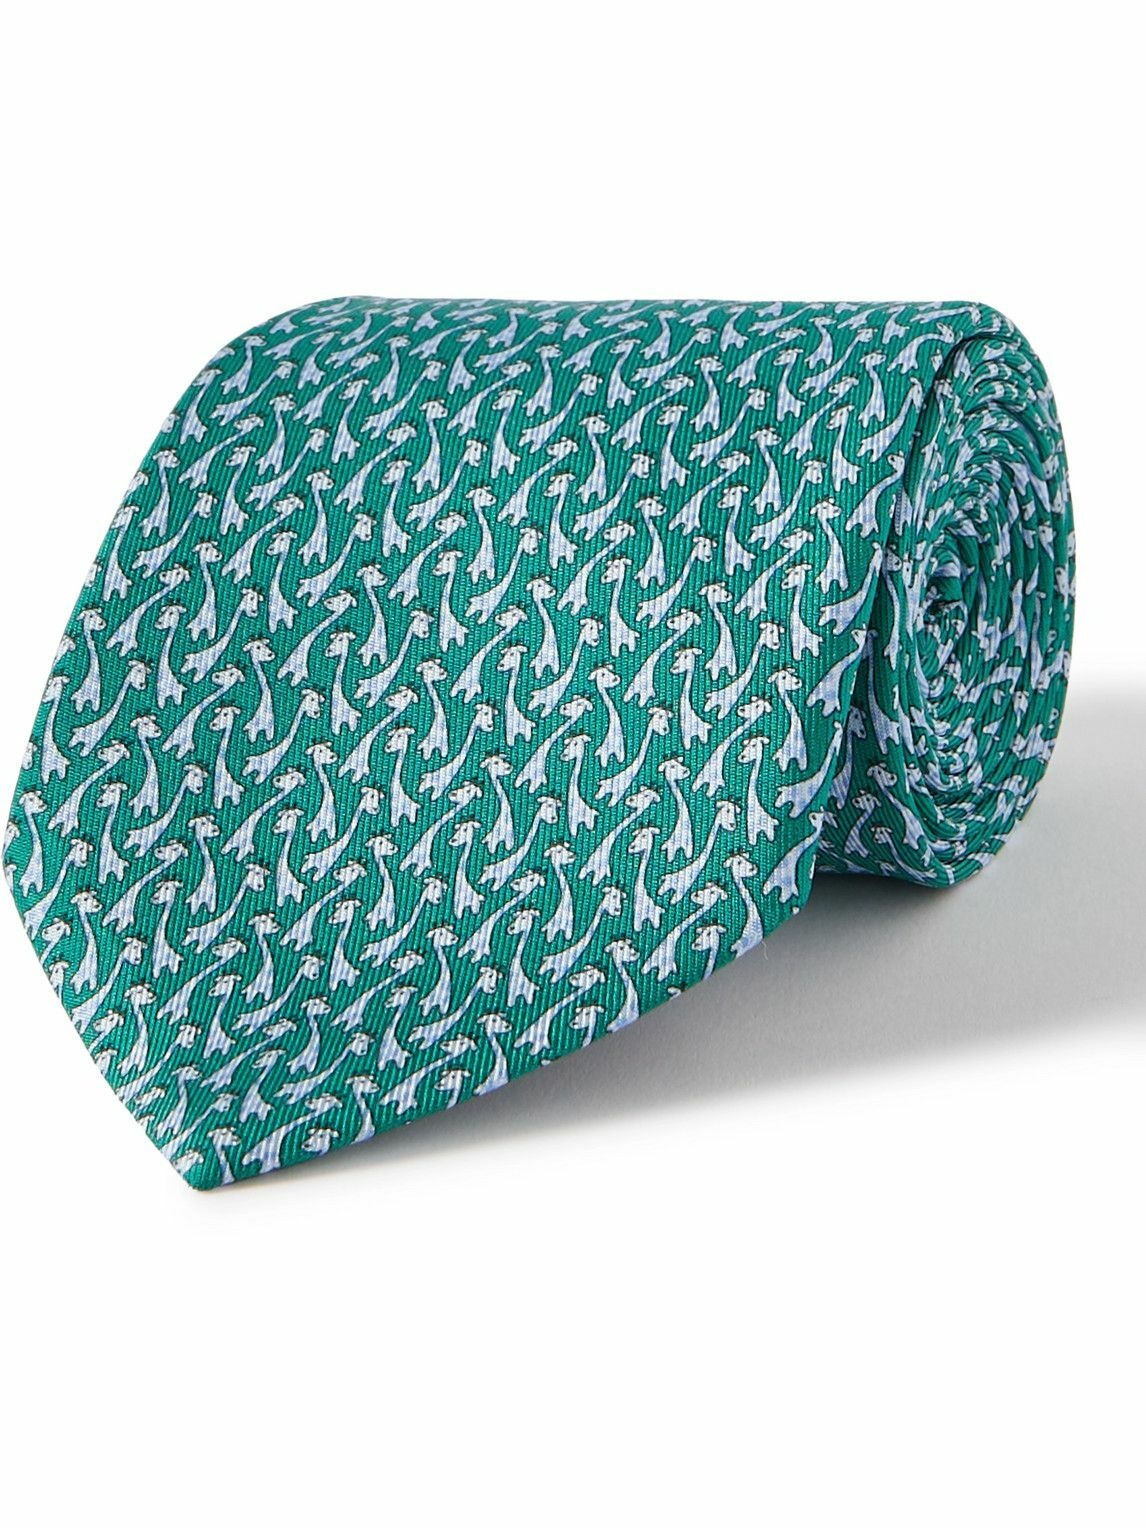 Photo: FERRAGAMO - Printed Silk-Twill Tie